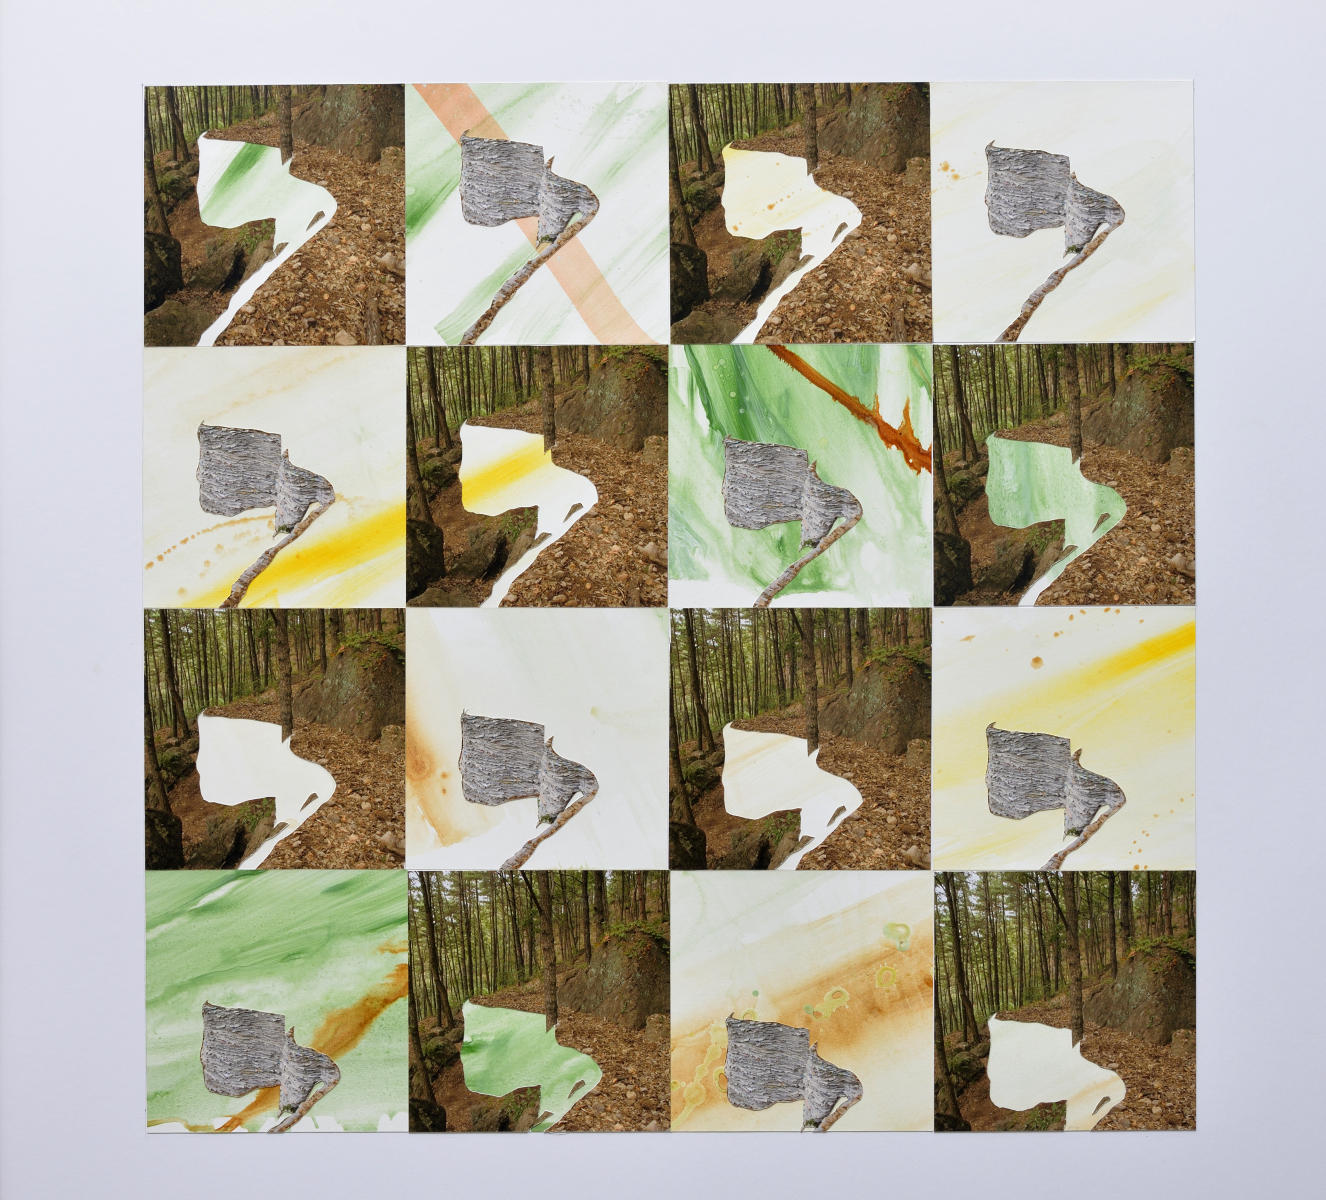 Gongju #2  6/14/19  paint paper, photographs  32"x32"